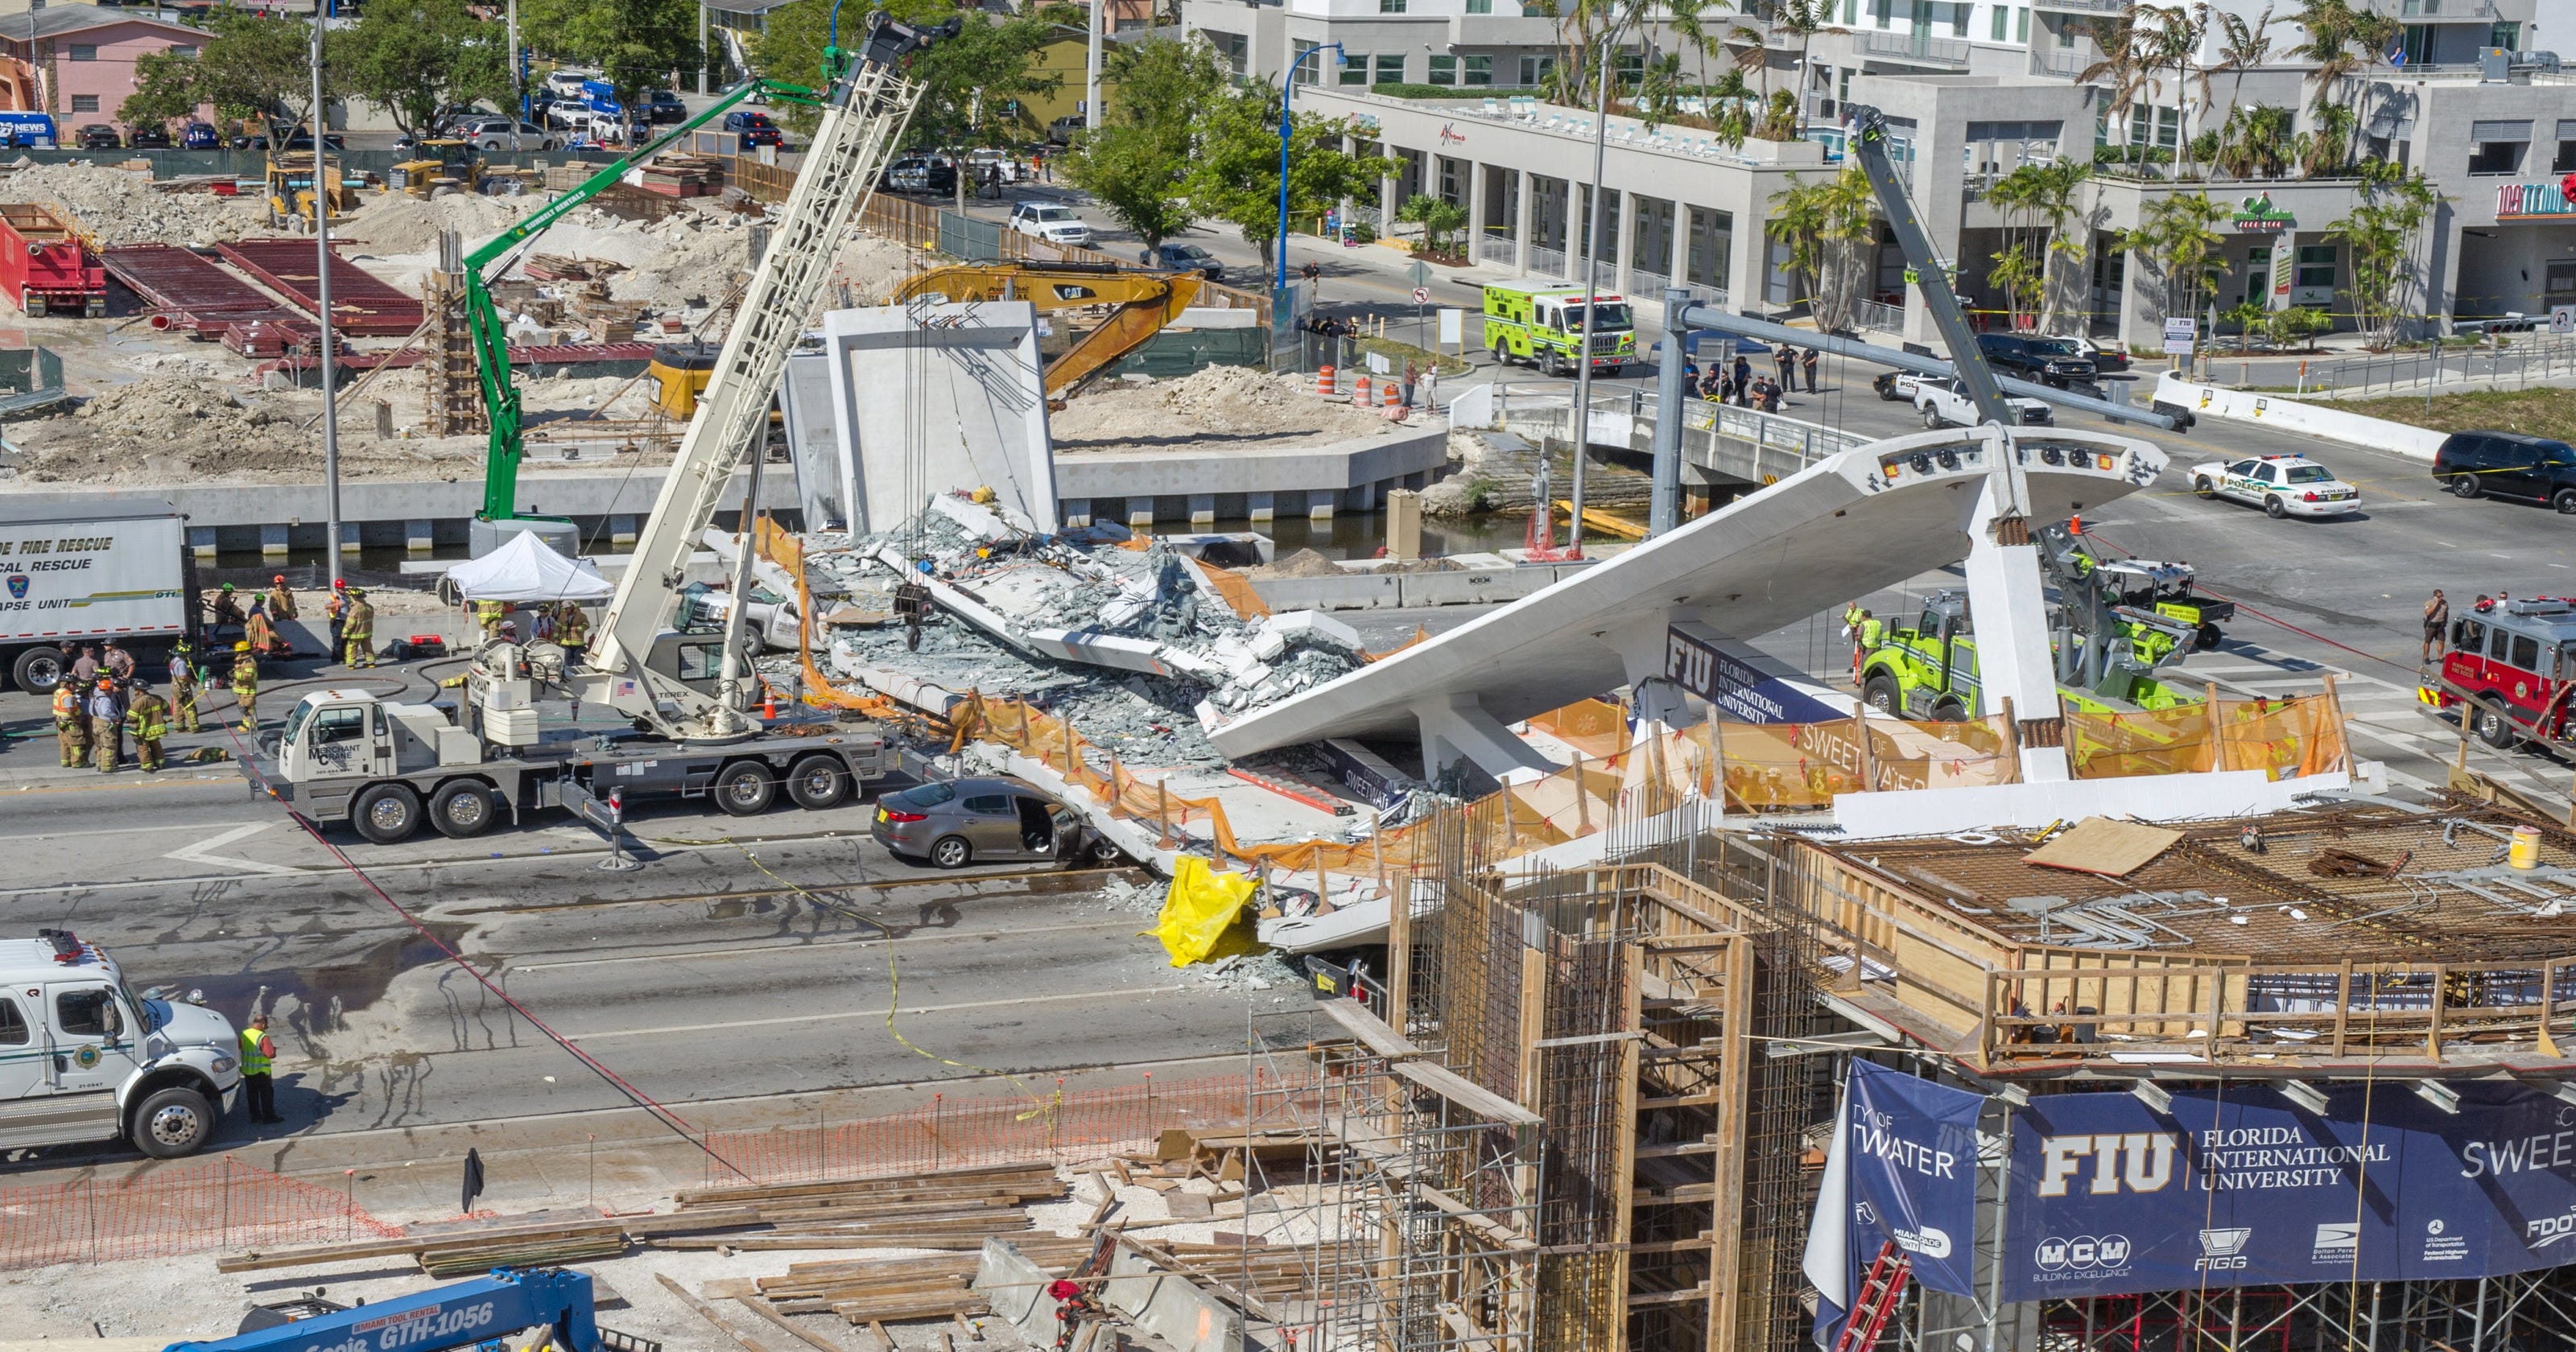 Miami bridge collapse Truss design, despite suspension appearance